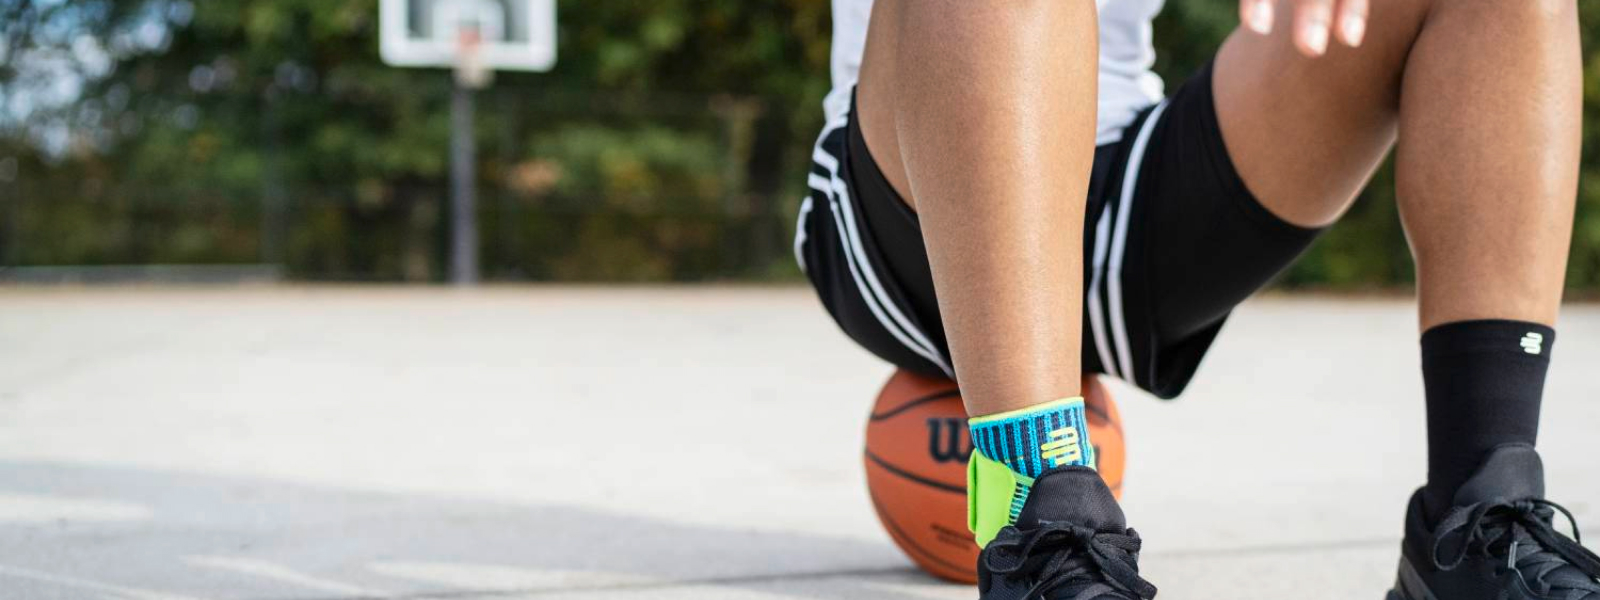 Streetballspeler met voetbinding staat op een basketbal op een straatveld